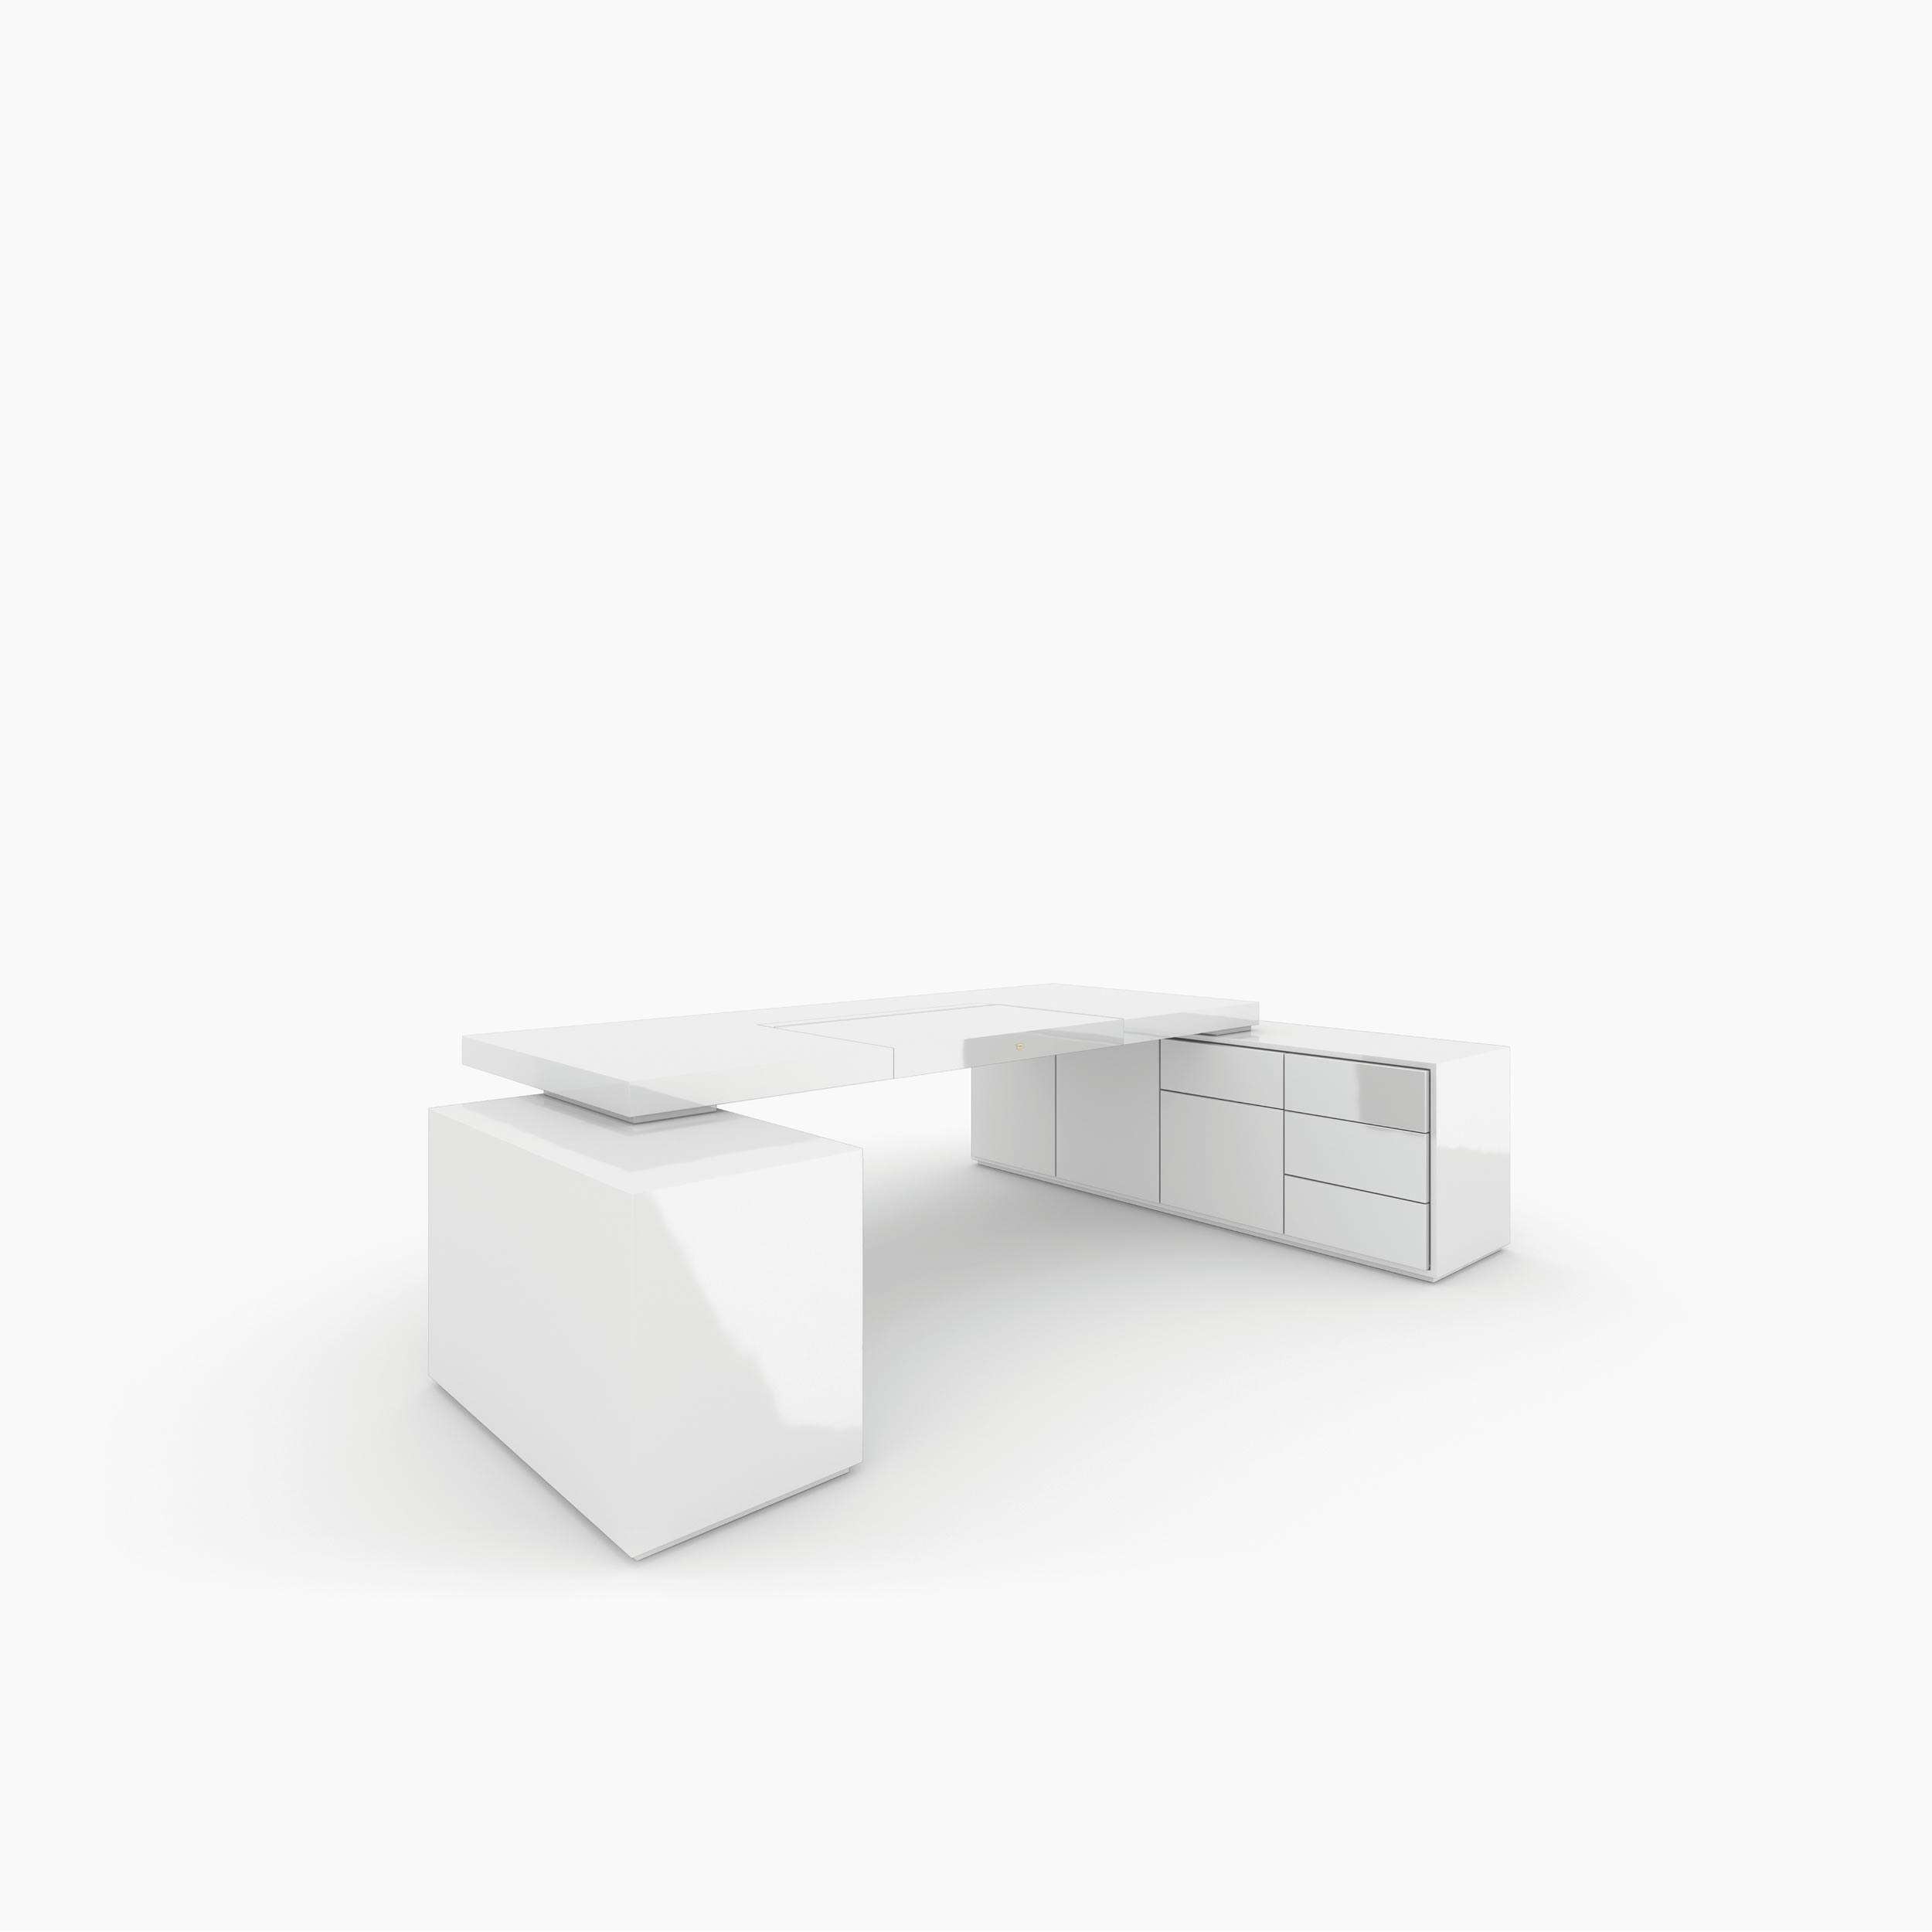 Schreibtisch scheiben und quader weiss interior design Chefzimmer simple furniture Schreibtische FS 95 FELIX SCHWAKE